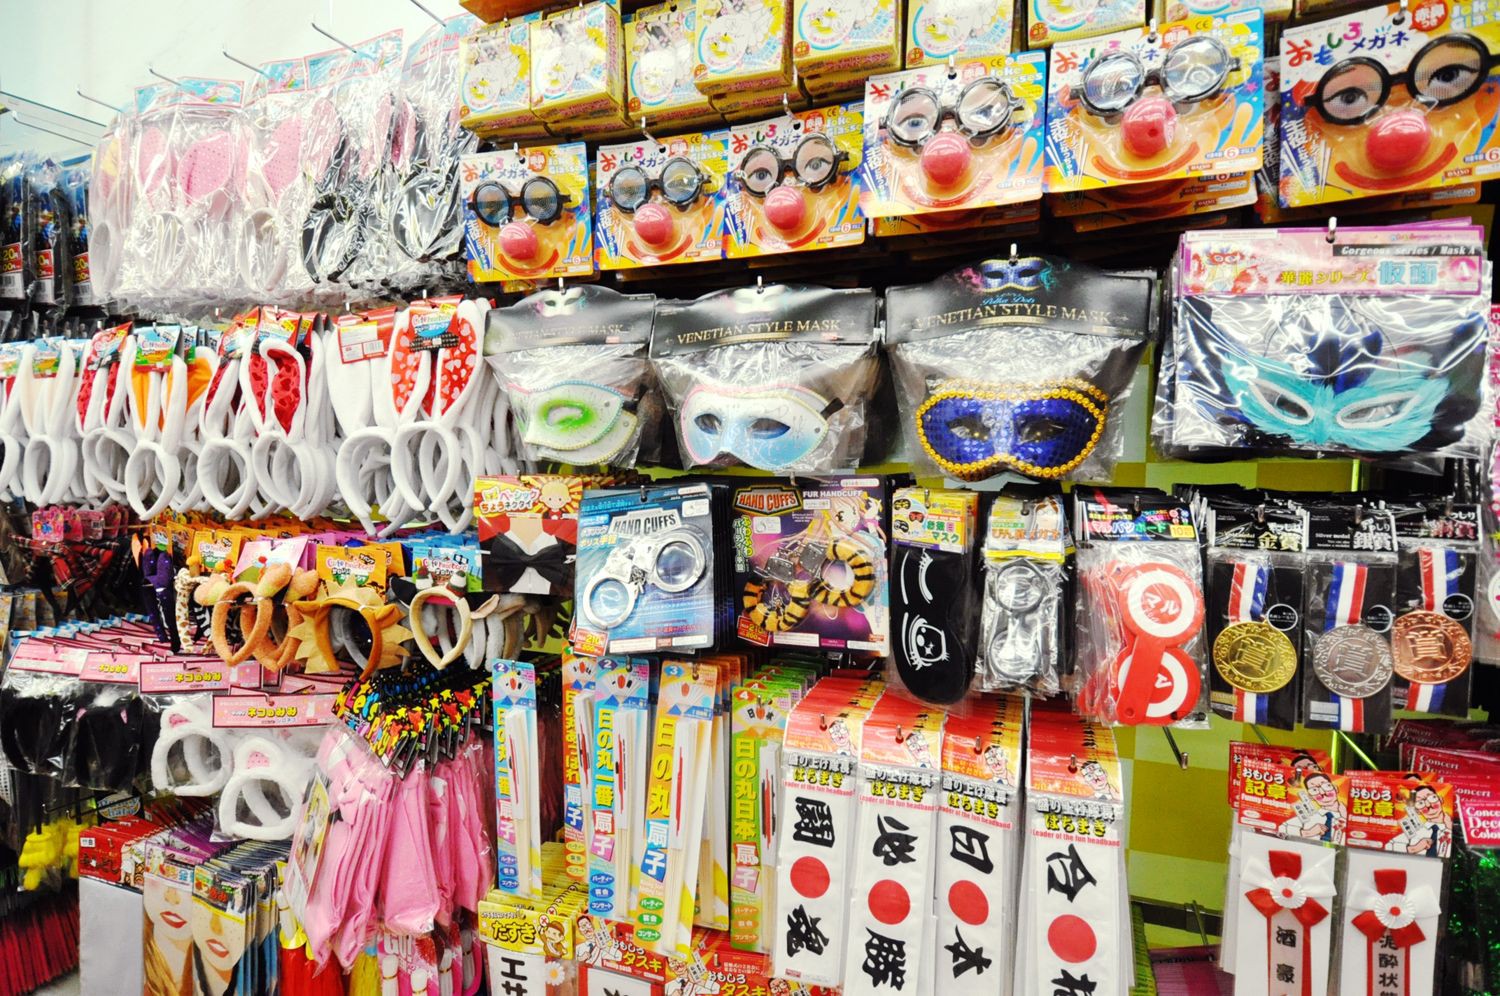 Đi du lịch Nhật Bản, chỉ với 1 đô la bạn có thể mua được những gì?